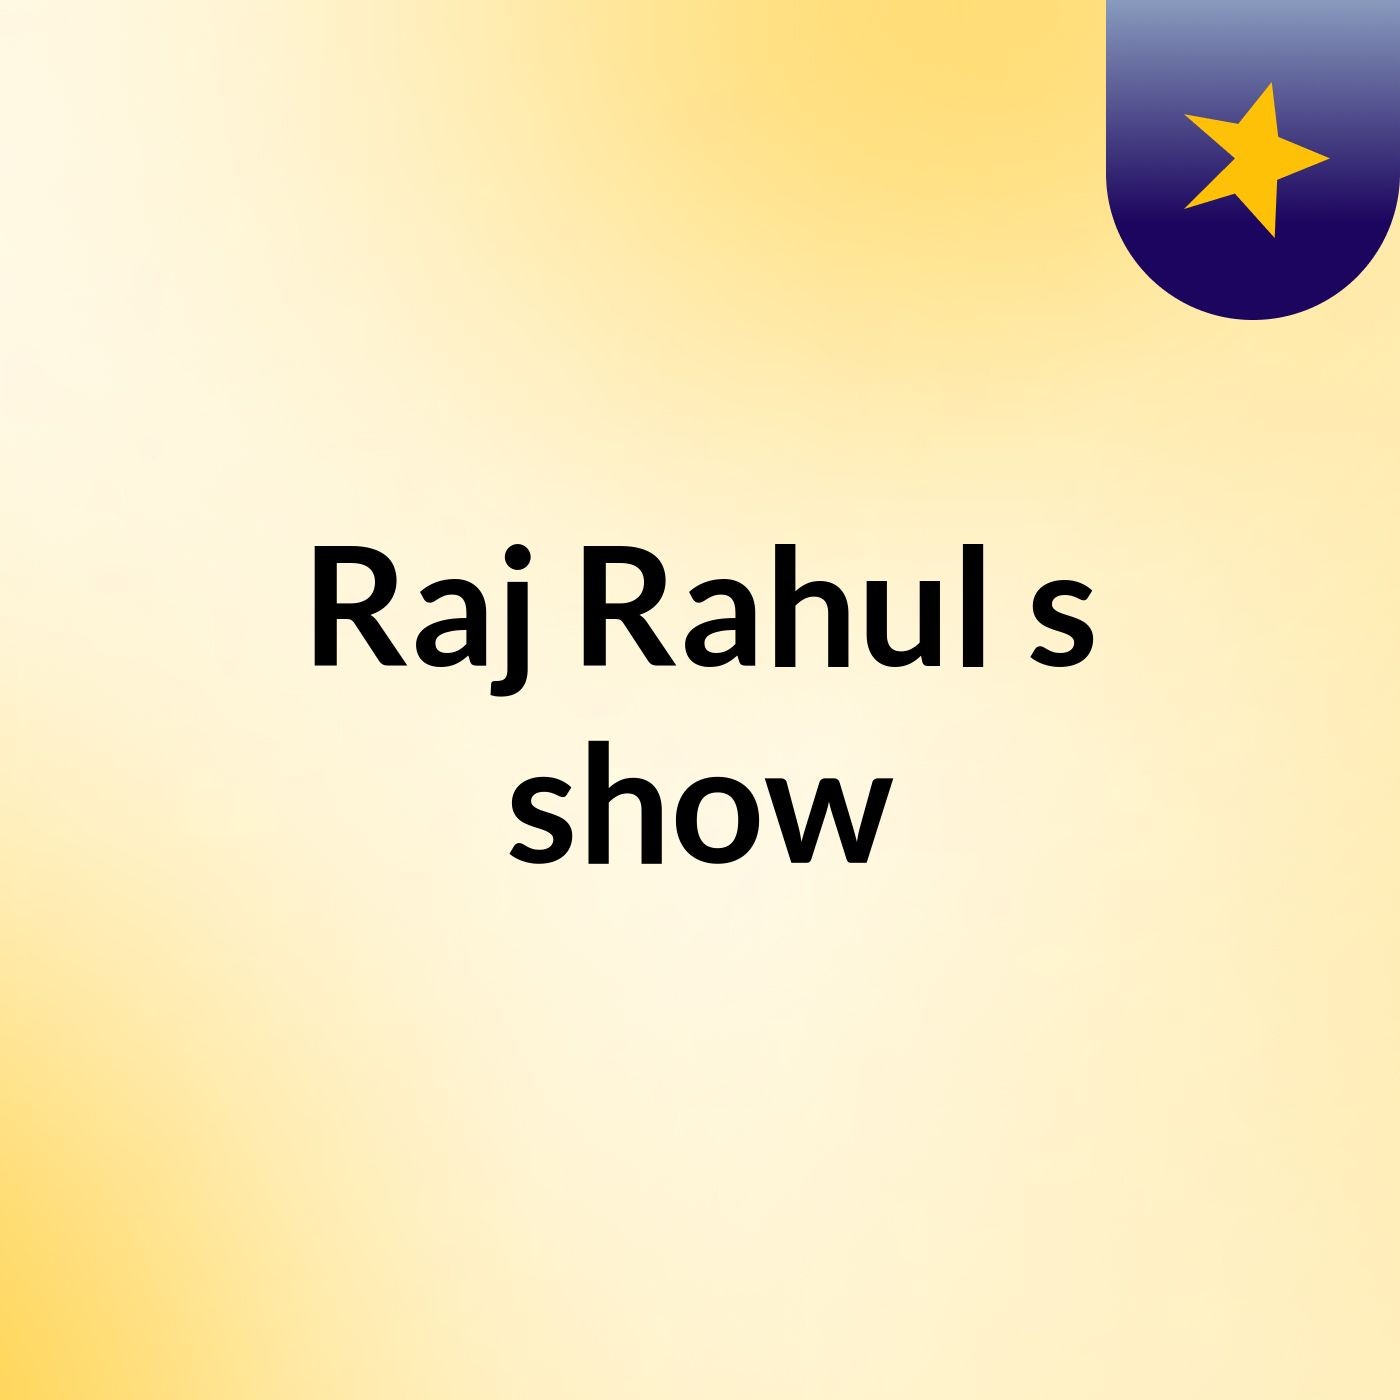 Raj Rahul's show